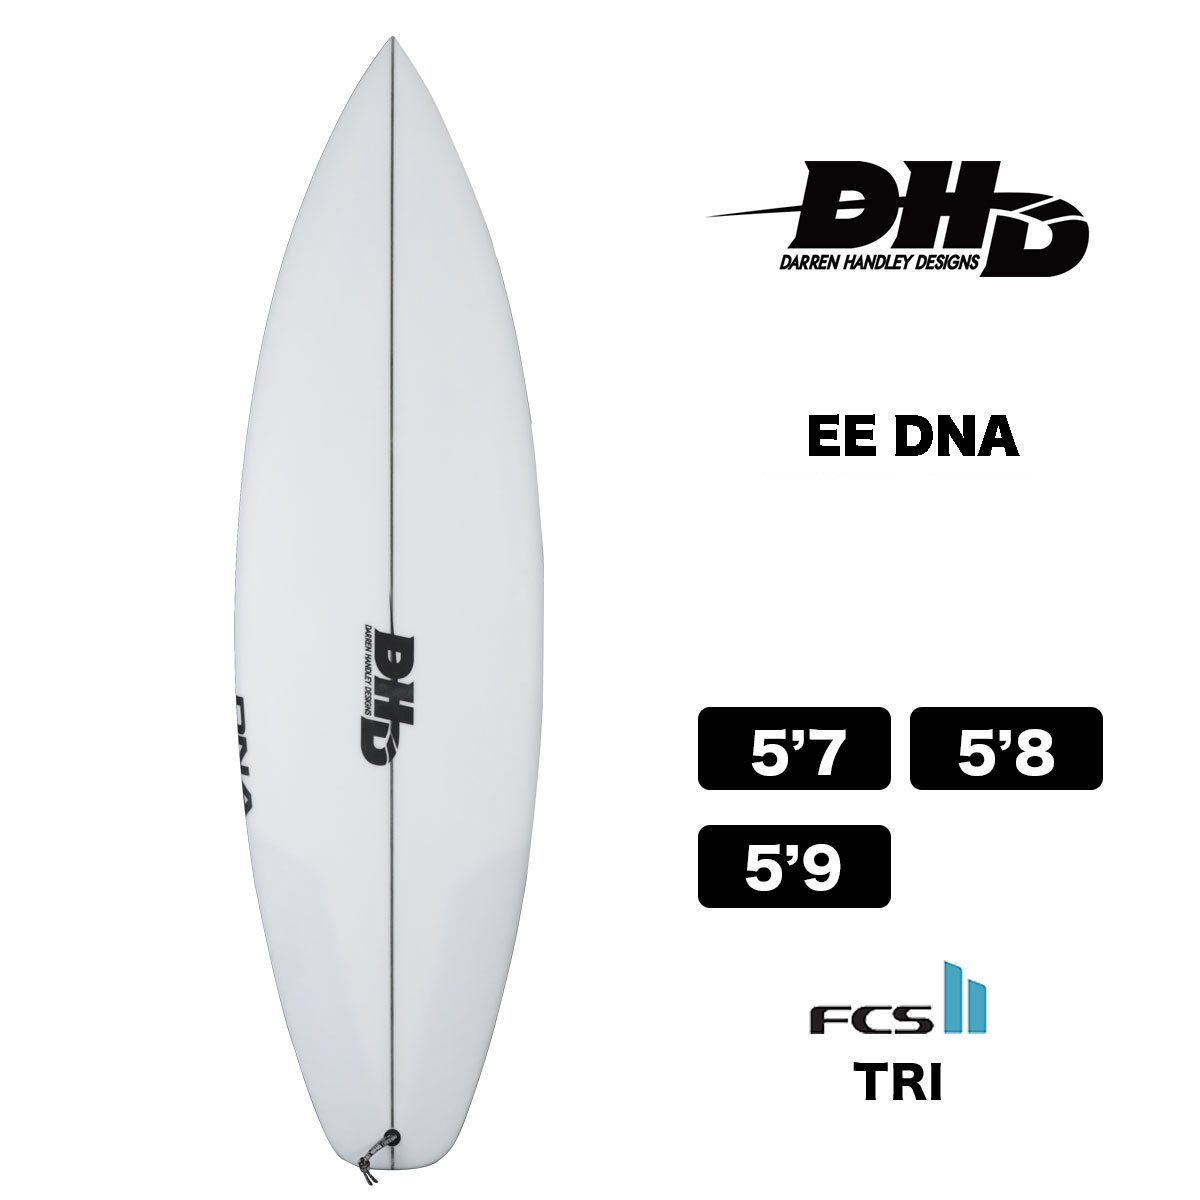 DHD SURFBOARDS EE DNA ダレンハンドレーデザイン イーイーディーエヌエー ショートボード FCS2 サーフボード トライフィン  クリア-ジャックオーシャンスポーツ